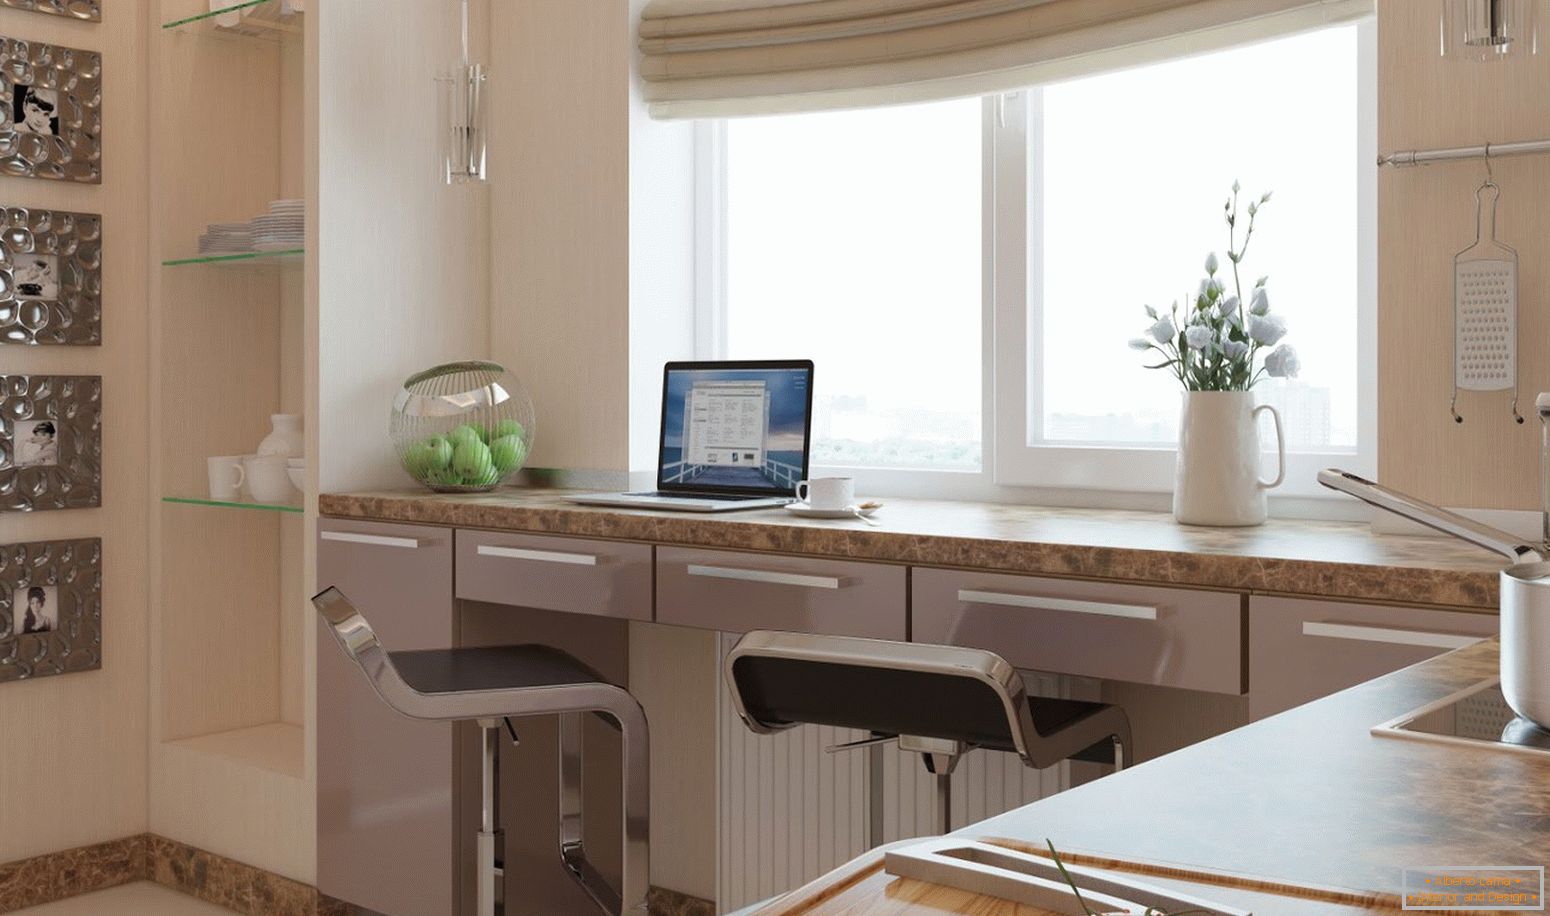 Espace de travail dans la cuisine, combiné avec un rebord de fenêtre